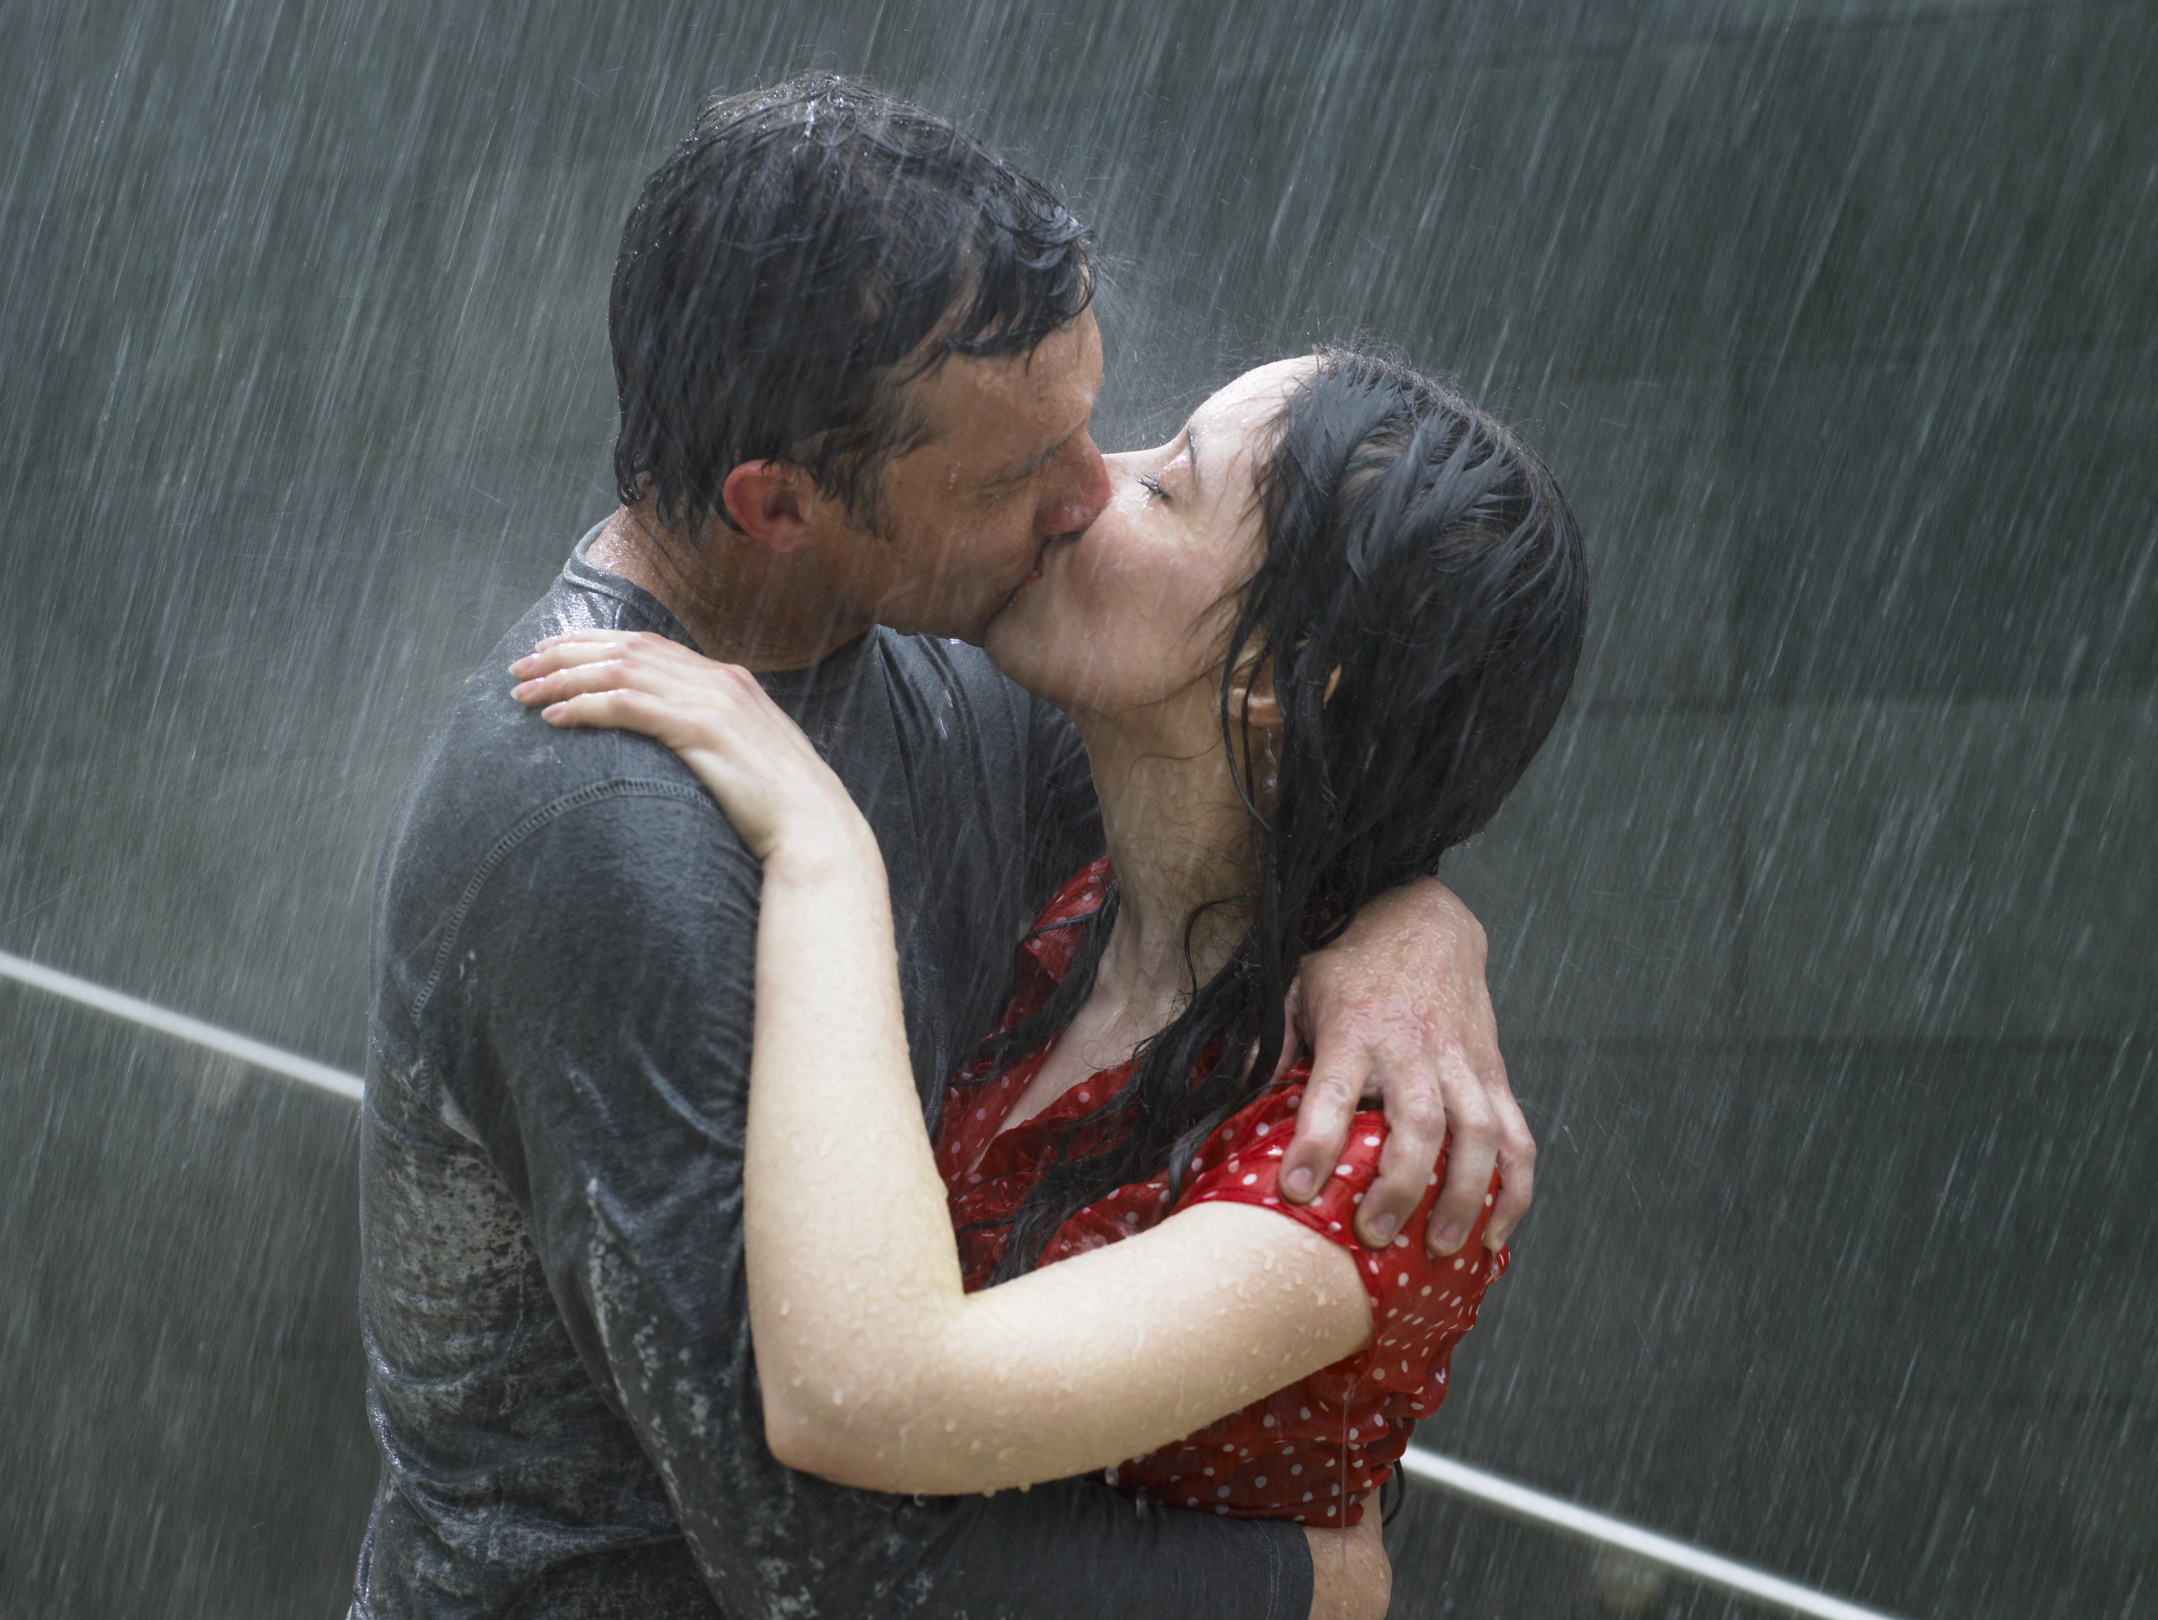 Горячая страсть в душе. Поцелуй под дождем. Парень и девушка под дождем. Любовь под дождем. Девушка и мужчина под дождем.